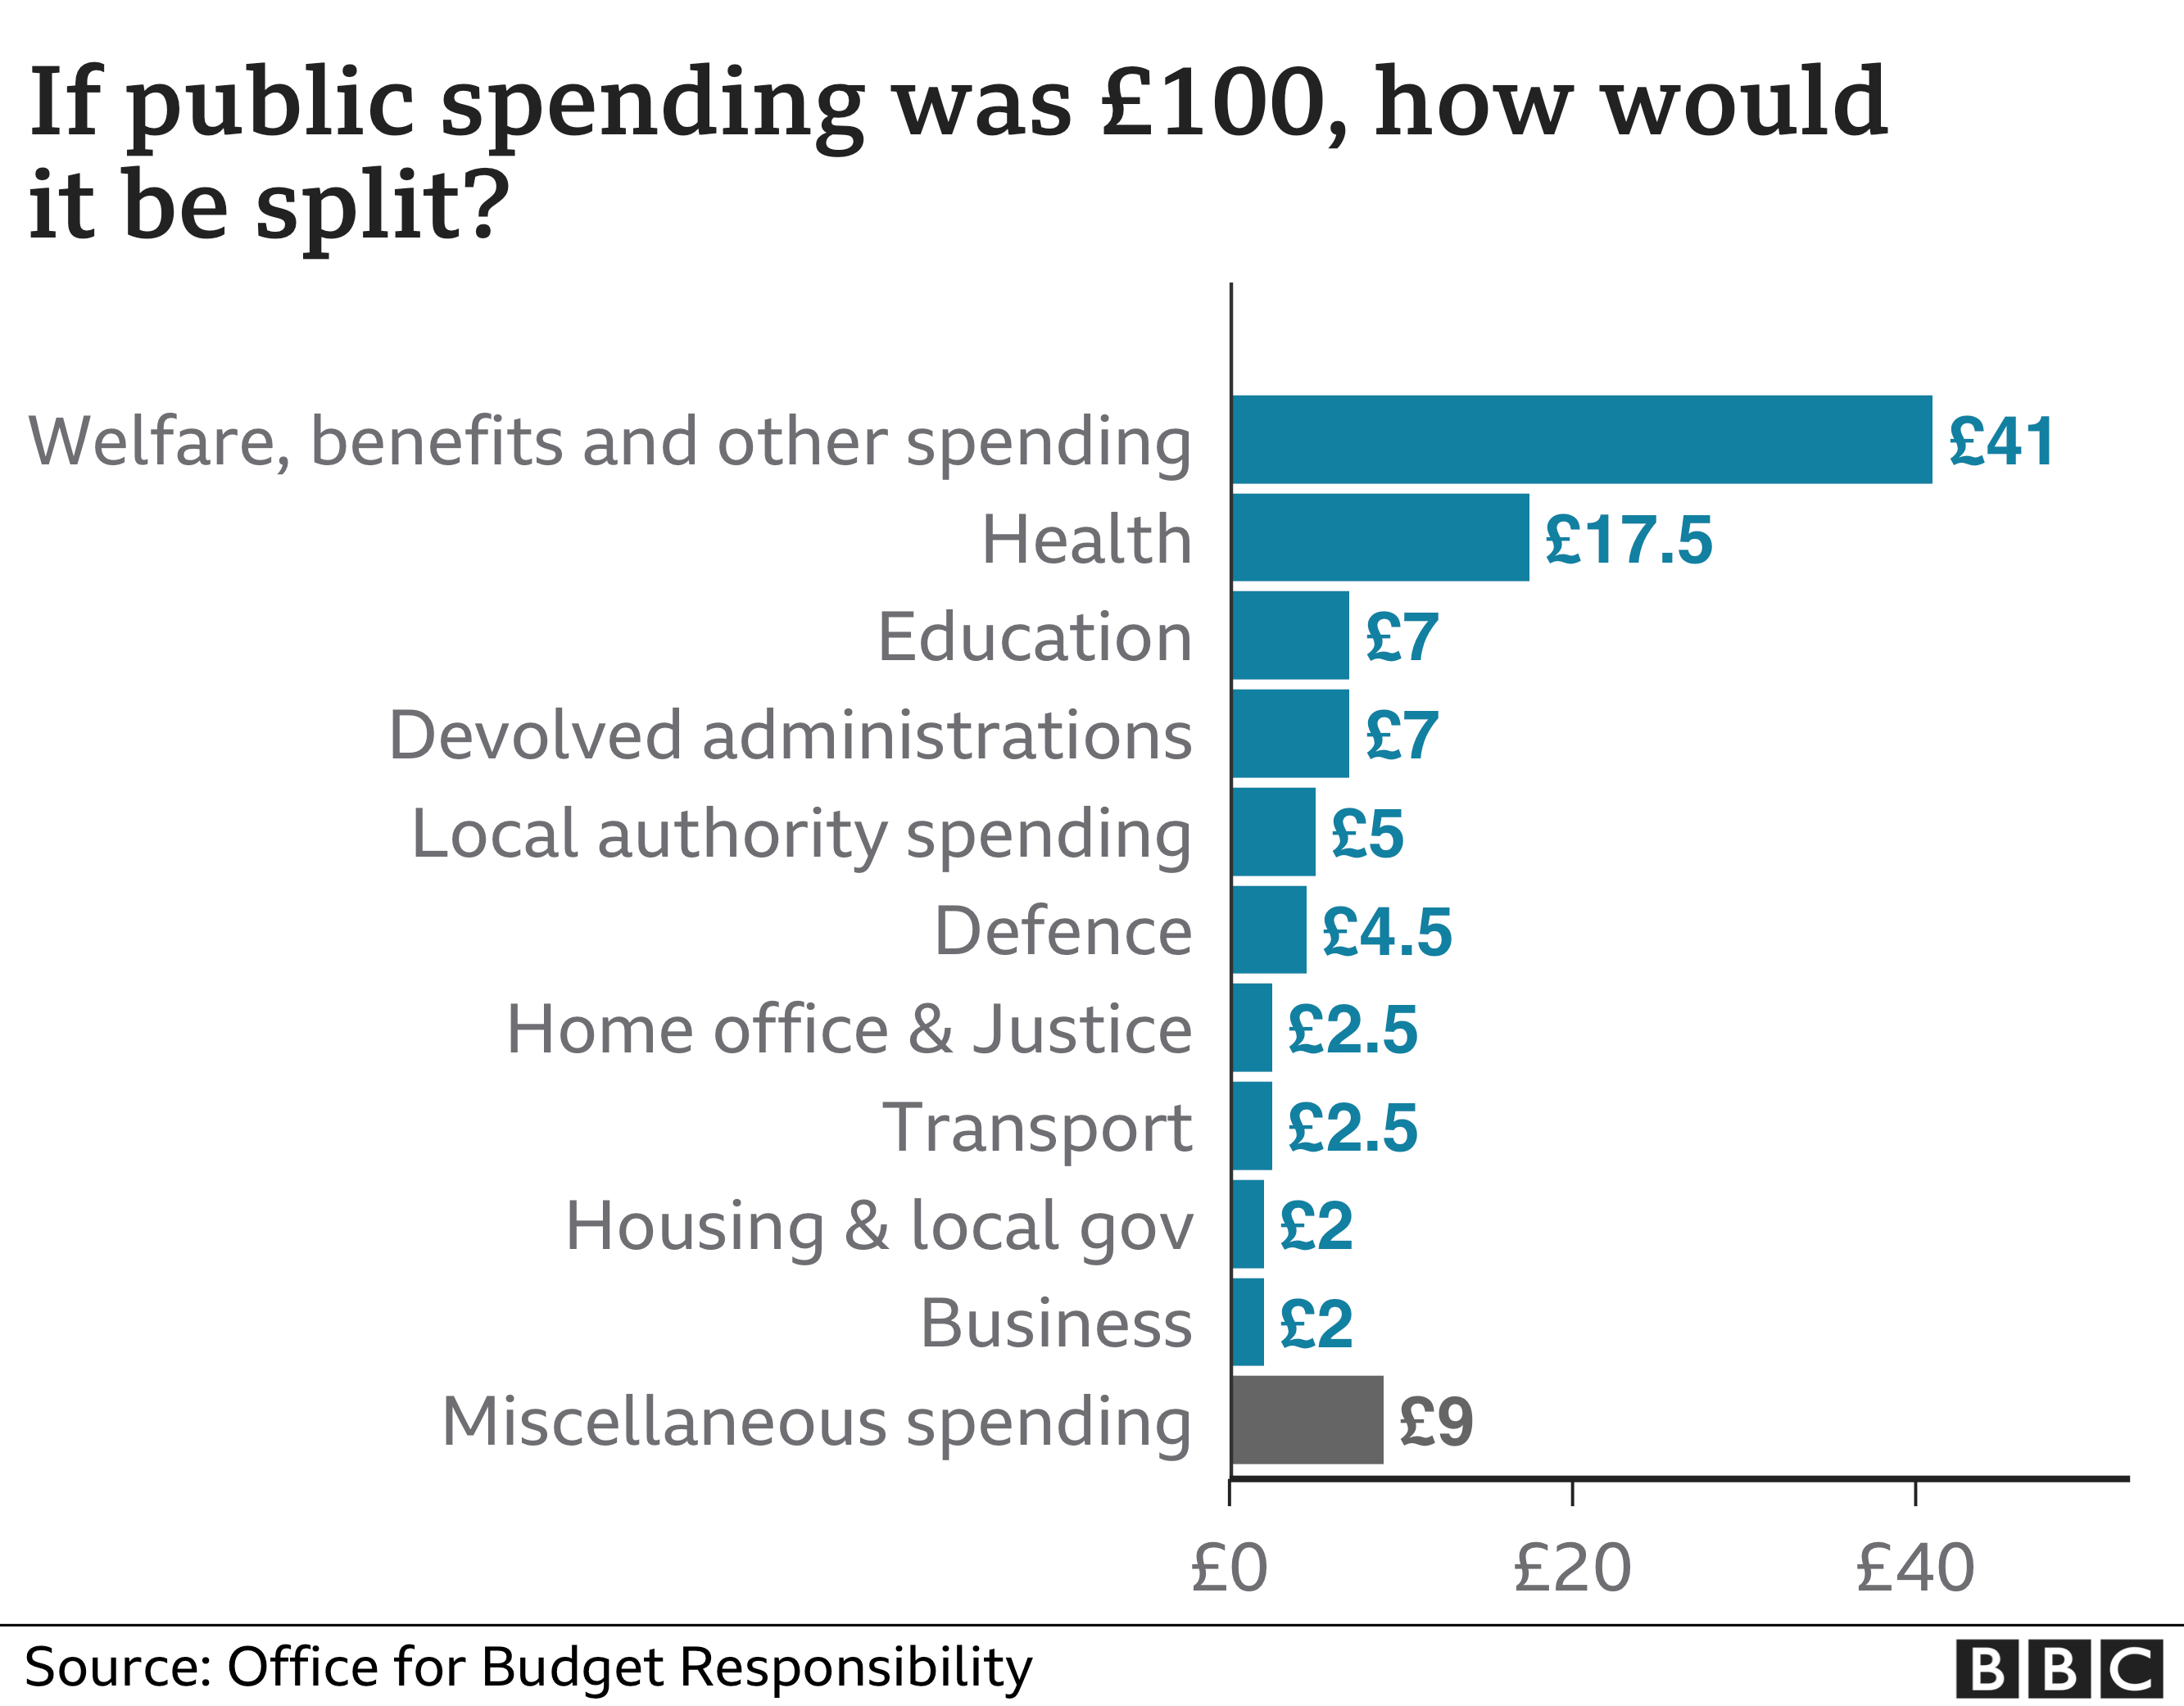 Public spending in £100